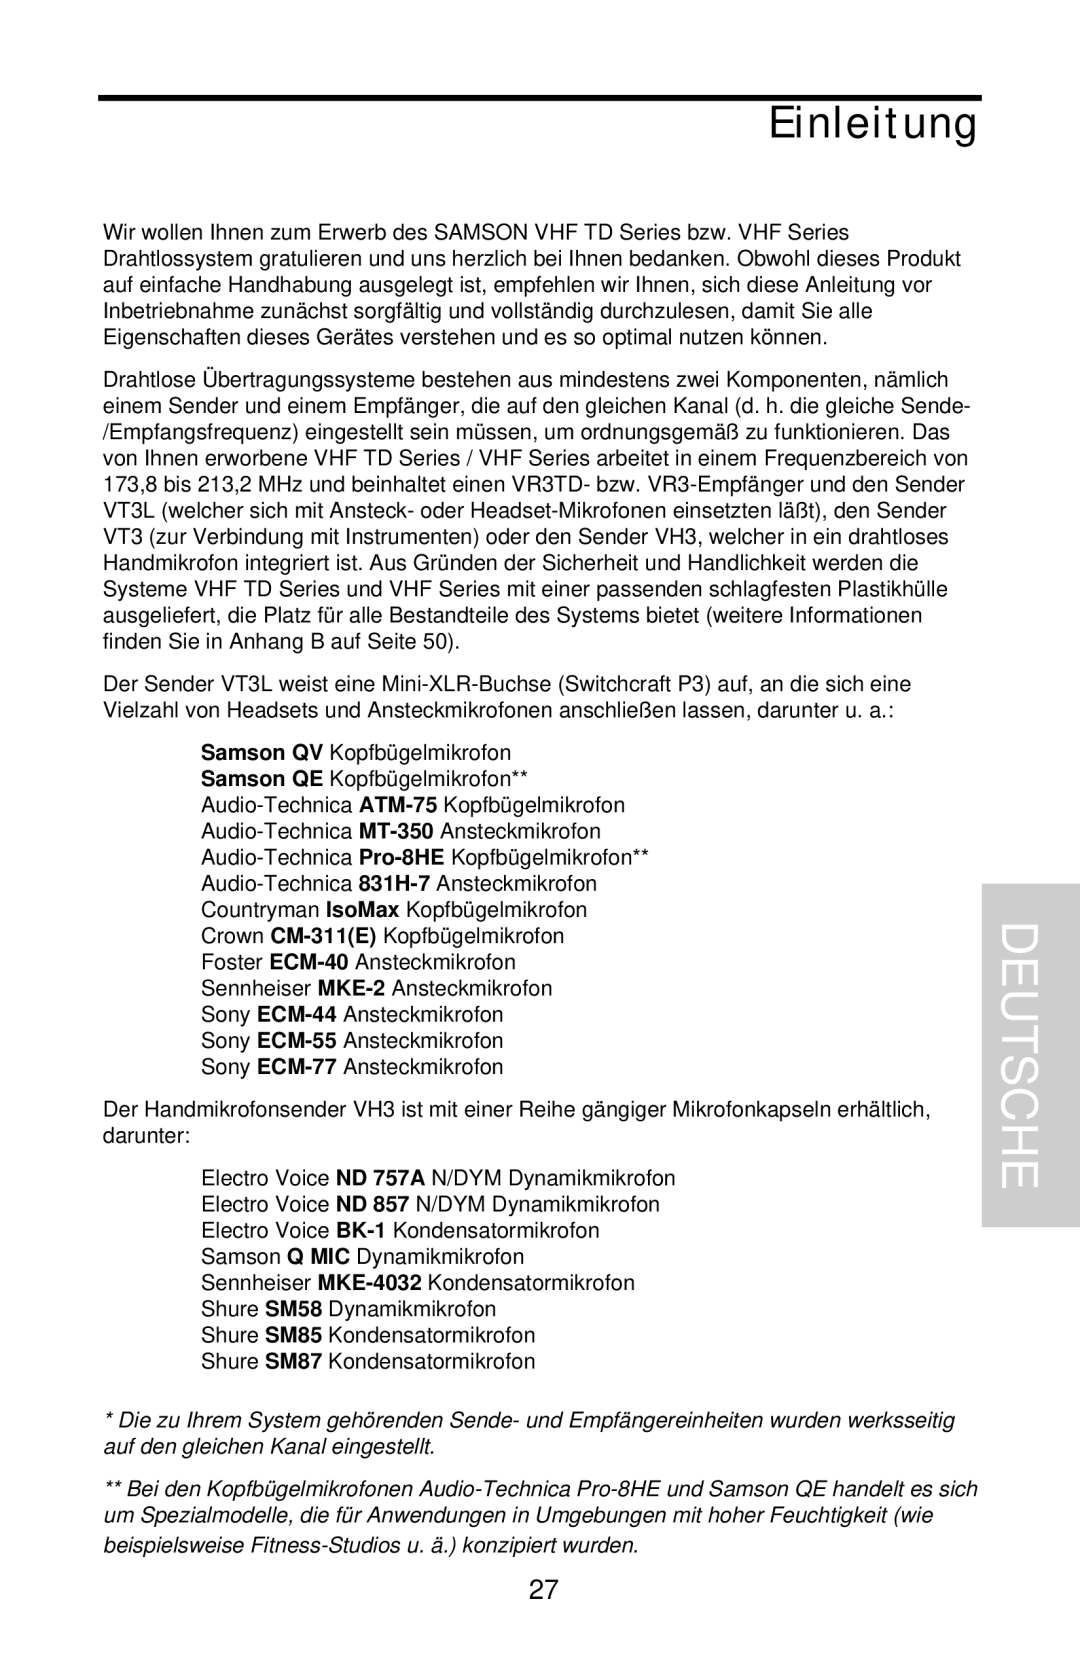 Samson VHF Series, VHF TD Series owner manual Deutsche, Einleitung 